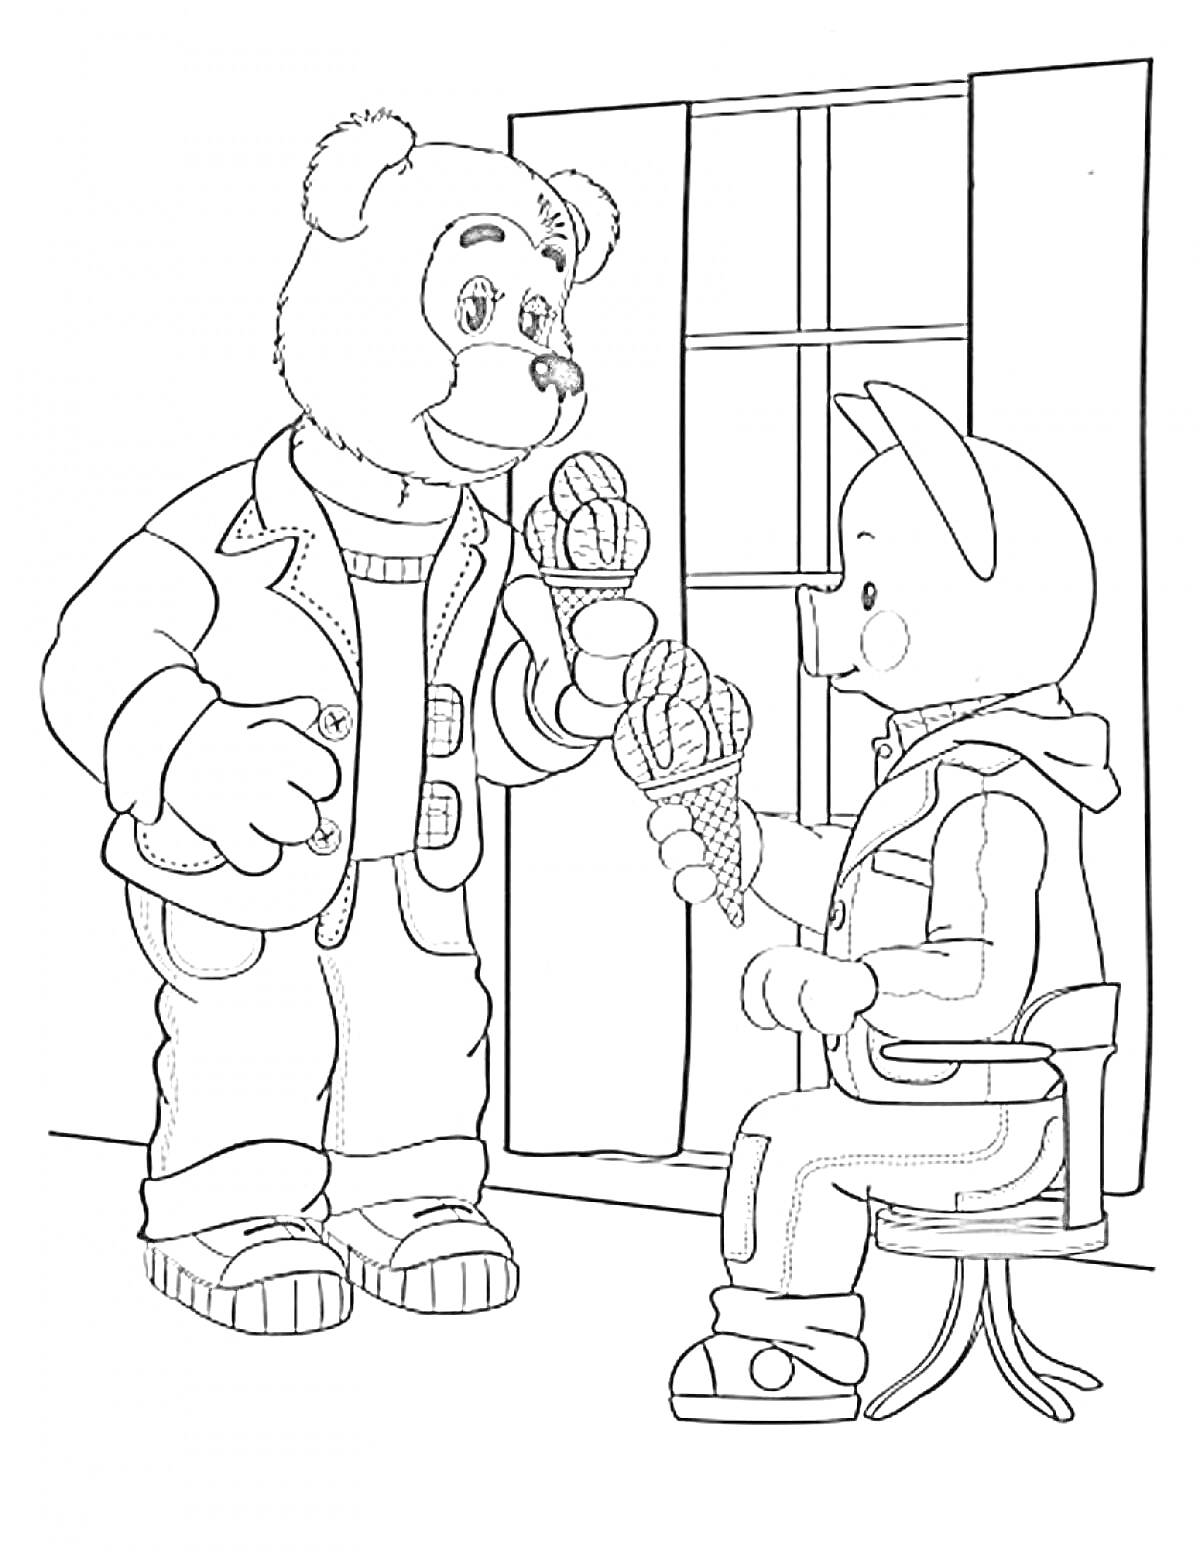 Раскраска Медведь и мальчик в шапочке с рожками, держащие мороженое двумя вафельными рожками, стоящие возле окна